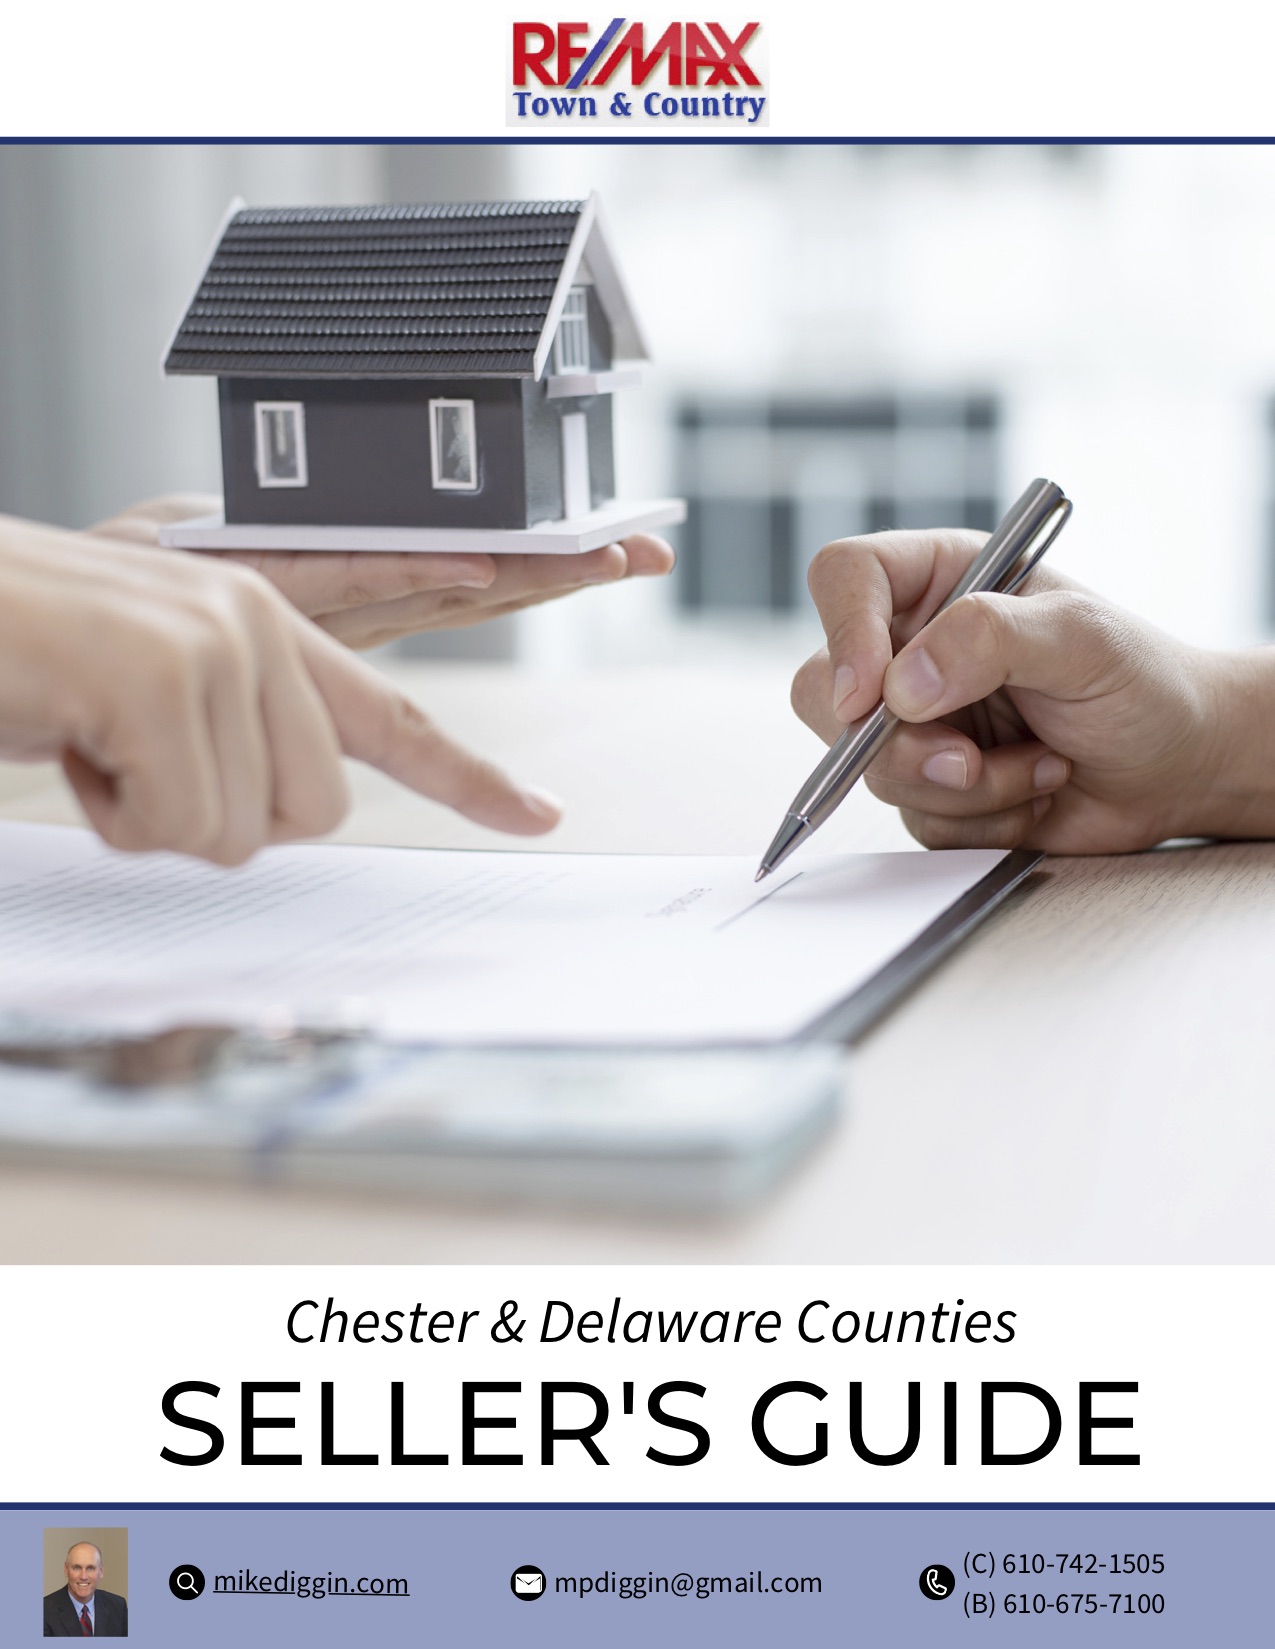 Home Seller's Guide